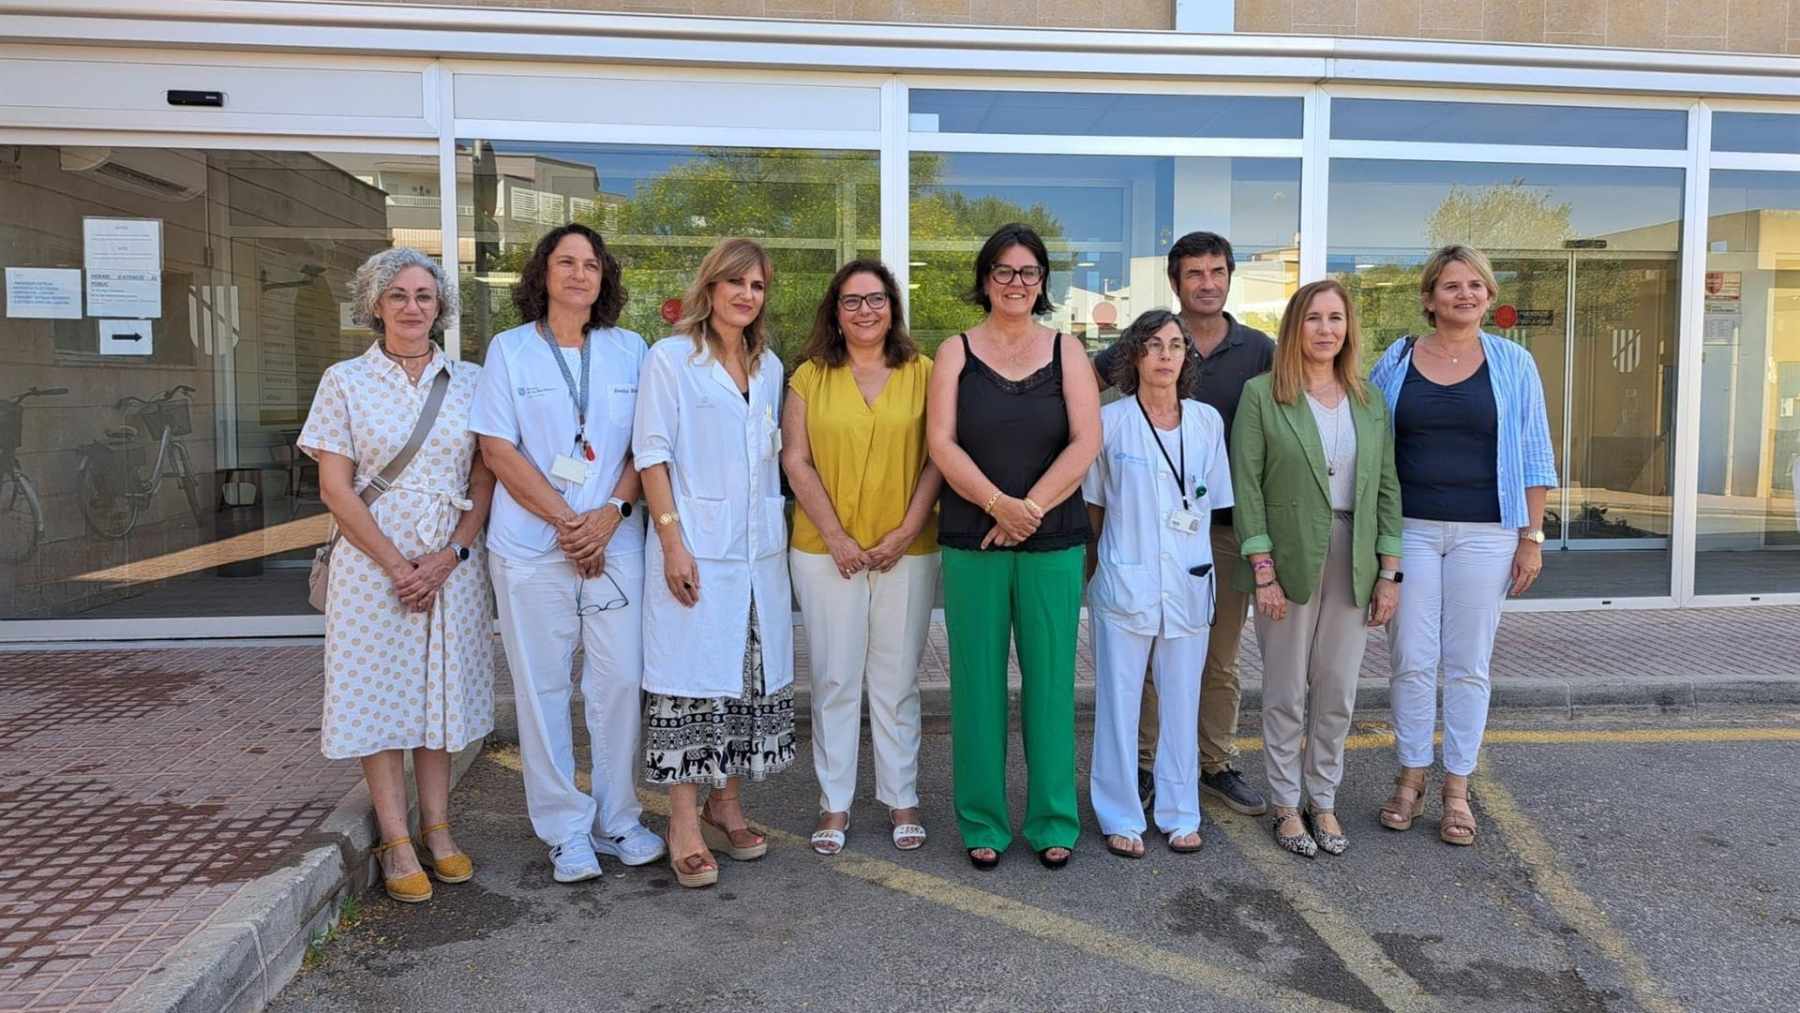 La consellera de Salud, Manuela García, visita el centro de salud Canal Salat de Ciutadella.